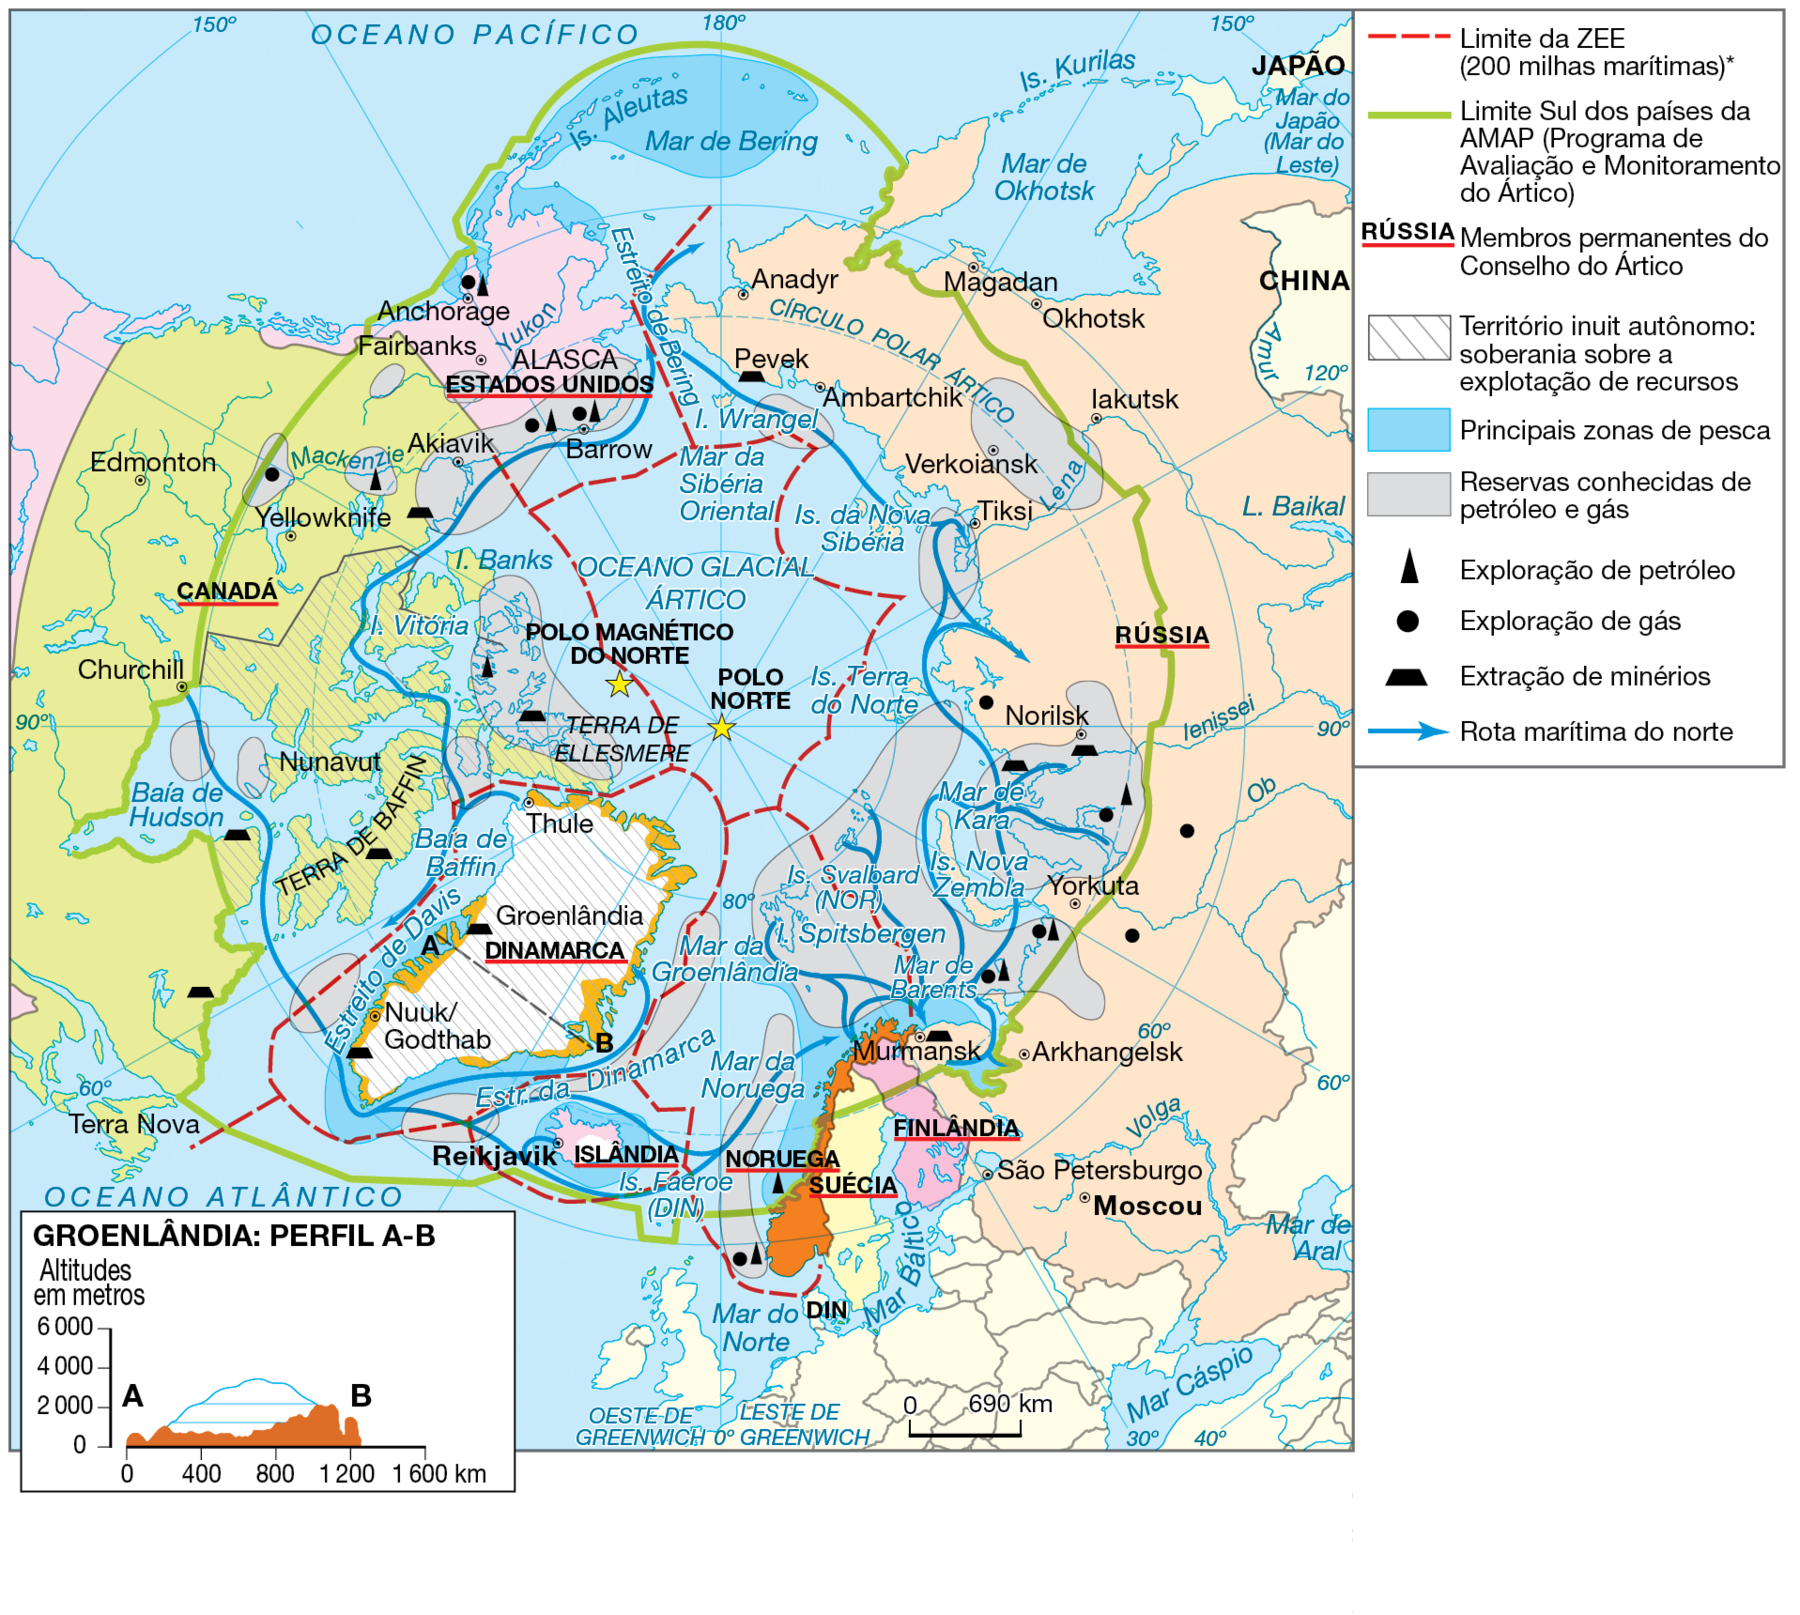 Mapa. Ártico: divisão política e recursos minerais. Mapa mostrando as divisões territoriais do Ártico, áreas de exploração, reservas comprovadas de petróleo e gás, cidades importantes, limites de zonas econômicas, banquisa e inlândsis. 
O mapa destaca a região do Ártico vista de cima. Do lado direito do mapa, a Rússia: mais ao sul, a Noruega, a Suécia, a Finlândia e a Islândia mais ao sul do Ártico. Do lado esquerdo, a Groenlândia (Dinamarca), terras do Canadá e Alasca (Estados Unidos).
Inlândsis estão representadas por áreas com pequenos riscos azuis nas bordas da Groenlândia, da Terra de Baffin (Canadá) e da Terra de Ellesmere (nas proximidades do Polo Magnético Norte). Banquisas estão representadas por linhas curvas fechadas, na cor cinza, em toda área central da região ártica, sobrepondo-se à área do Oceano Glacial Ártico. Em linhas tracejadas vermelhas estão representados os Limites de Zonas Econômicas Exclusivas (ZEE) ao redor da Groenlândia, da Islândia, em torno de parte dos territórios de Rússia, Alasca e Canadá e na parte central da região ártica. Em linhas cinzas diagonais, o Território Autônomo Nunavut, no Canadá. 
Reservas comprovadas de petróleo e gás estão destacadas na cor cinza área central ártica; no Mar de Kara e Mar de Barents, nas proximidades da Rússia; em áreas na Baía de Baffin e Baía de Hudson, próximo ao Canadá; área da Terra de Ellesmere, próximo ao polo magnético do norte; áreas do Oceano Glacial Ártico próximo ao Alasca e Canadá. 
Com uma estrela vermelha, a indicação do Polo Norte (no centro do mapa) e Polo Magnético do Norte (a noroeste da estrela do Polo Norte). 
As áreas de exploração de petróleo são indicadas por um triângulo na cor preta na Rússia, Alasca, Canadá e Noruega. 
Um quadrado na cor preta indica áreas de exploração de gás na Rússia, Alasca, Canadá e Noruega.  Um trapézio na cor preta indica locais de extração de minérios na Rússia, Canadá e Groenlândia. Um ponto preto dentro de um círculo de fundo branco indicam a localização das capitais dos países: Suécia: Estocolmo; Noruega: Oslo;  Finlândia: Helsinki; Rússia: Moscou: Islândia:  Reykjavik. 
Pontos pretos simples indicam localização de cidades importantes. No Canadá: Churchill; na Rússia: São Petersburgo. no Alasca: Fairbanks, Barrow; na Groenlândia: Nuuque Godtas. 
Na parte inferior, à direita, a escala de 0 a 840 quilômetros. À esquerda, perfil topográfico da Groenlândia representando a variação altimétrica do relevo. No perfil, à esquerda, eixo vertical mostrando as altitudes em metros, variando de 0 a 6.000 metros. No eixo horizontal a extensão em quilômetros, variando de 0 a 1.600 quilômetros. Ponto A: entre 0 e 2.000 metros e 0 quilômetros. Ponto B: próximo a 2.000 metros e 1.200 quilômetros.